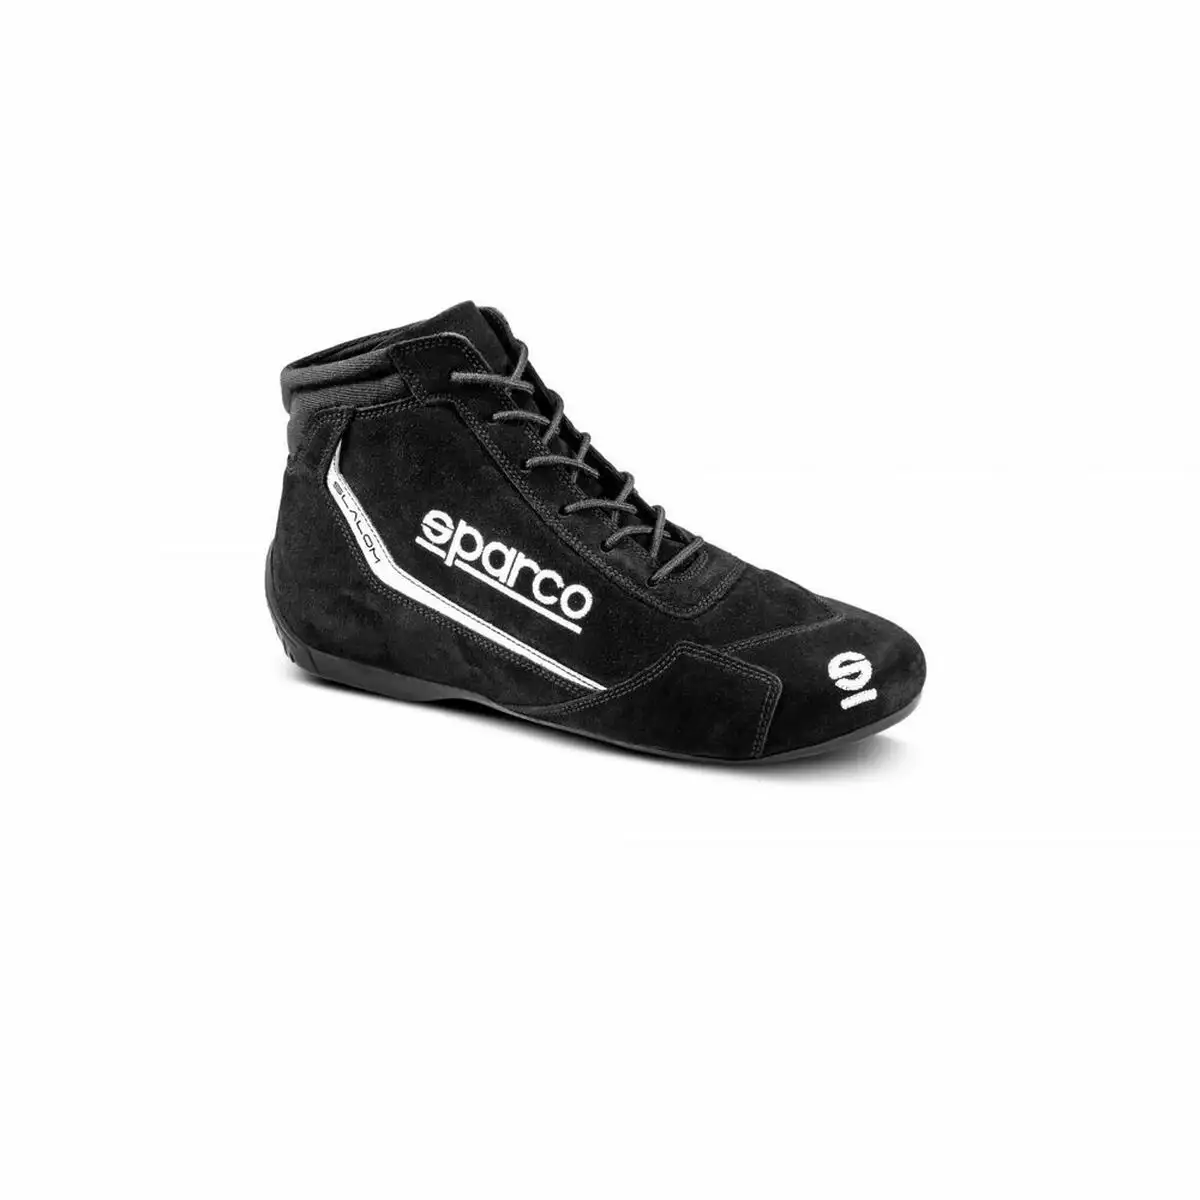 Chaussures de course sparco 00129543nr noir_3755. Bienvenue sur DIAYTAR SENEGAL - Où le Shopping est une Affaire Personnelle. Découvrez notre sélection et choisissez des produits qui reflètent votre unicité et votre individualité.